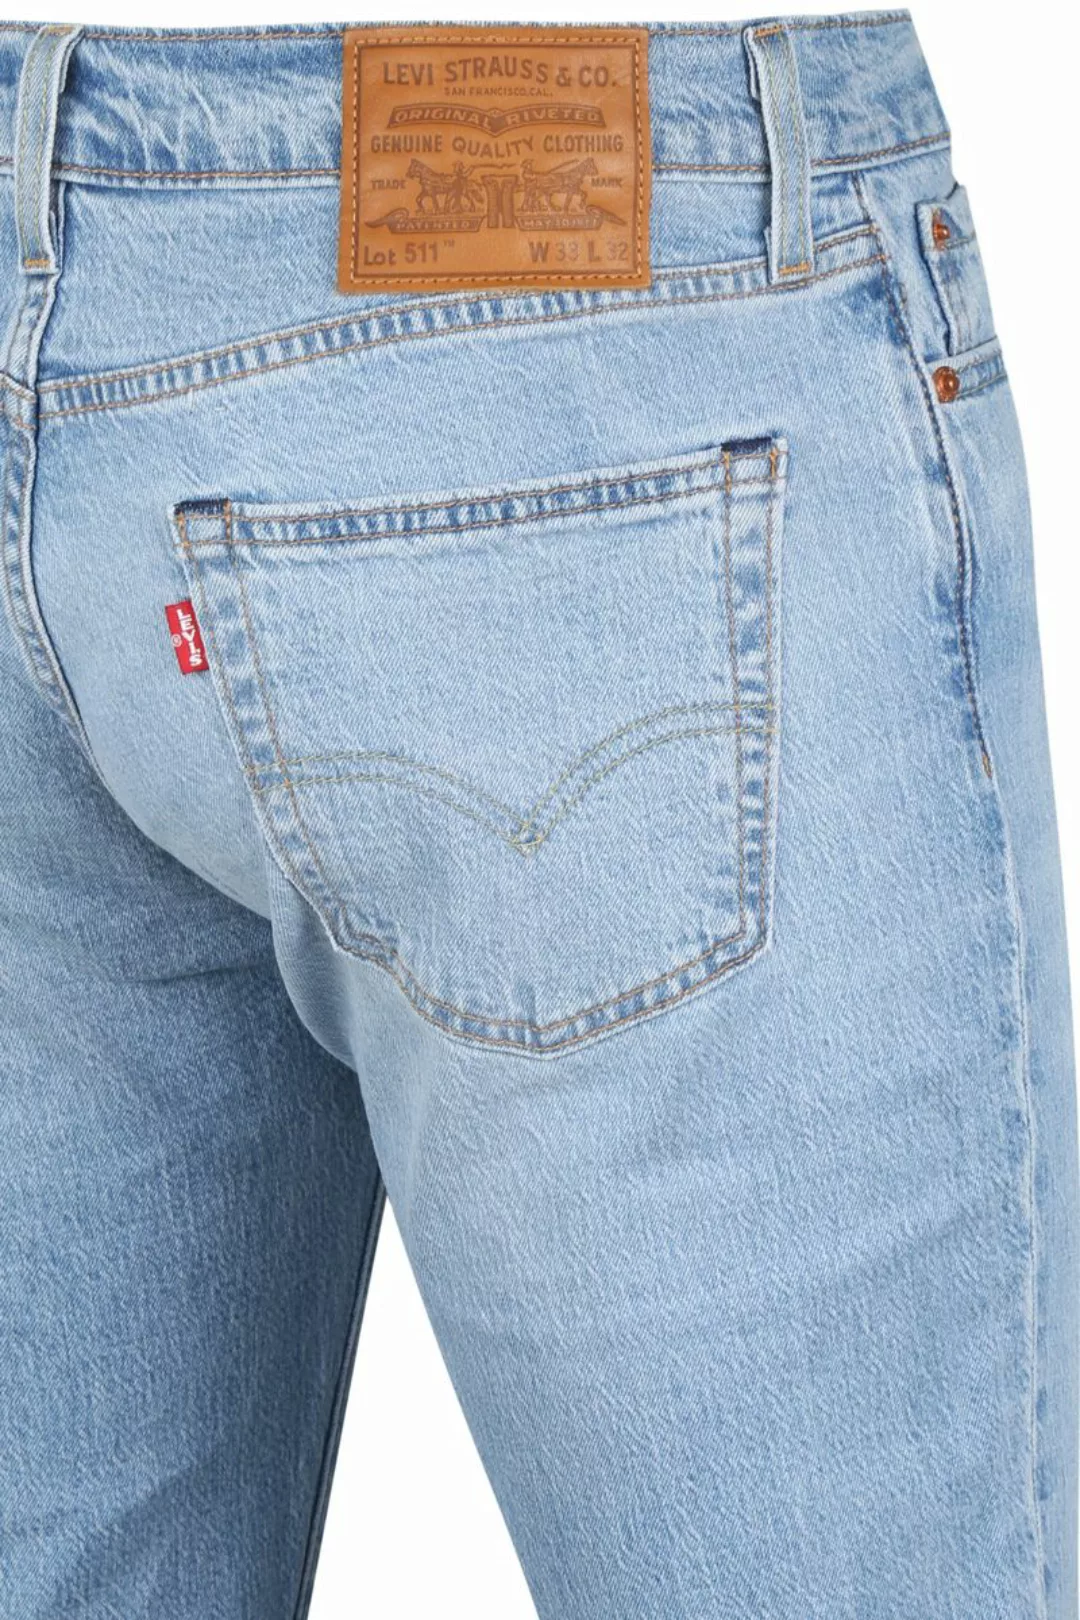 Levi's 511 Jeanshose Blau - Größe W 33 - L 30 günstig online kaufen